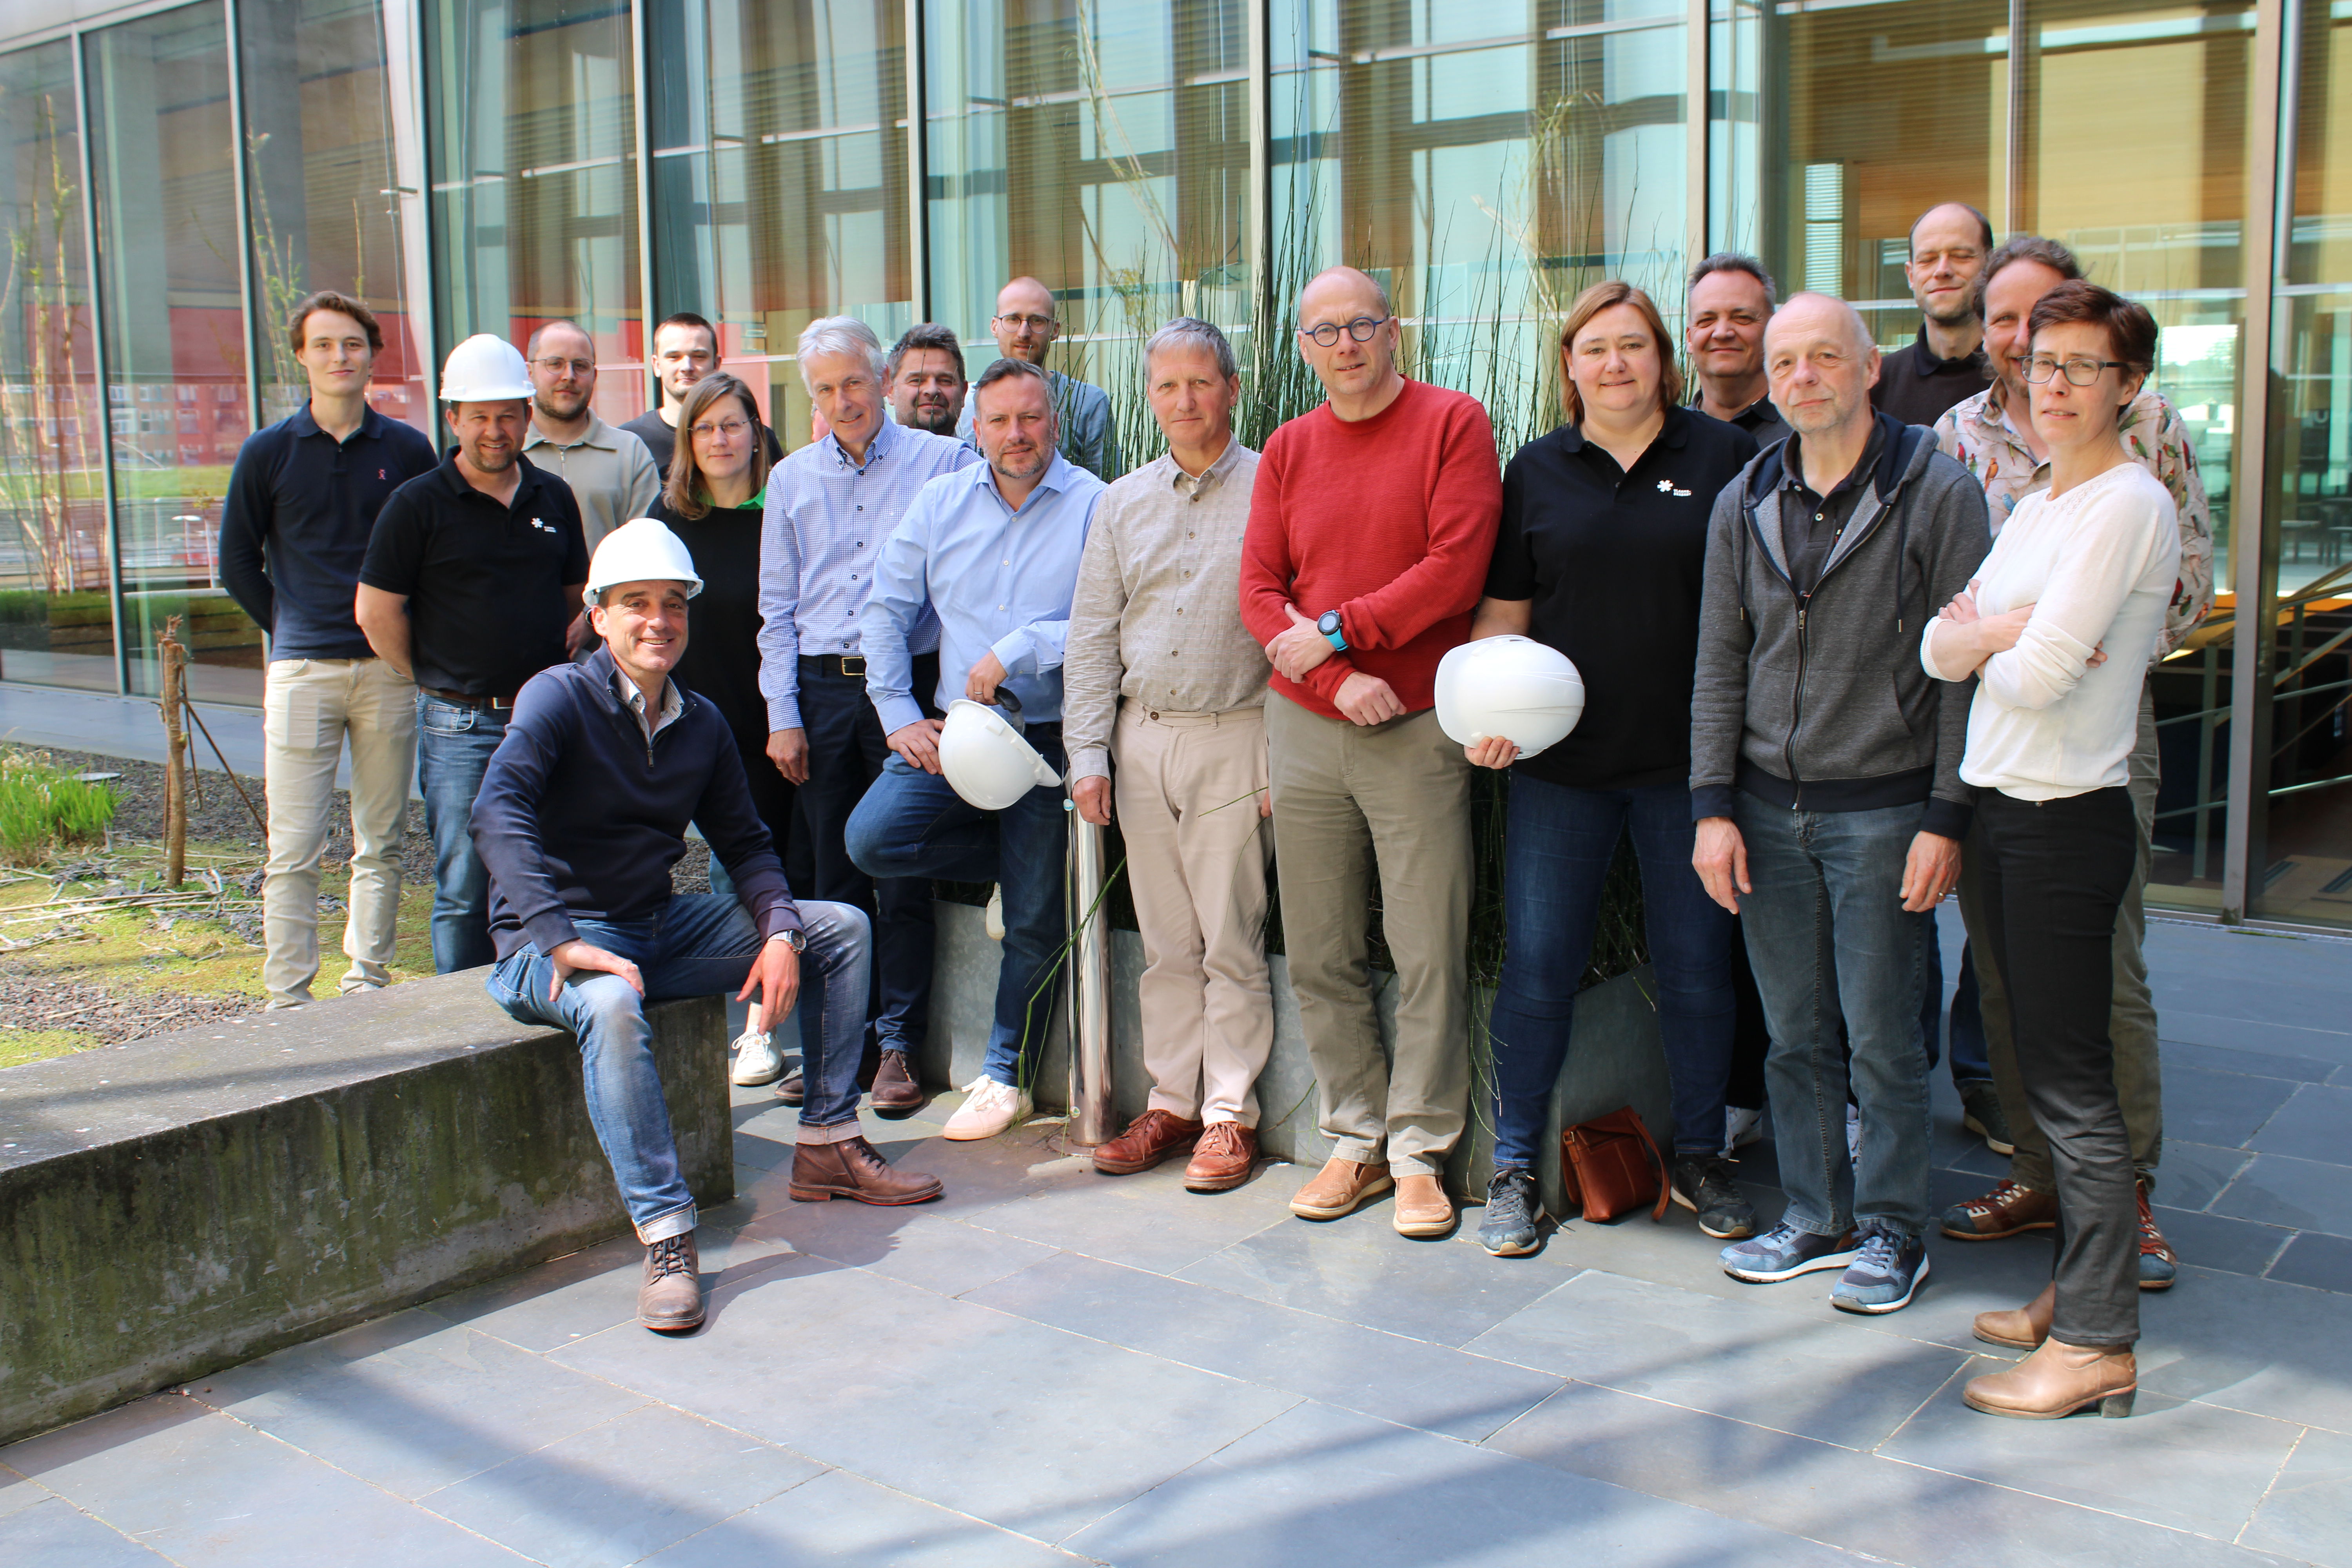 Op 3 mei vond een opleiding voor nieuwe externe renovatiebegeleiders plaats in het Provinciehuis in Leuven